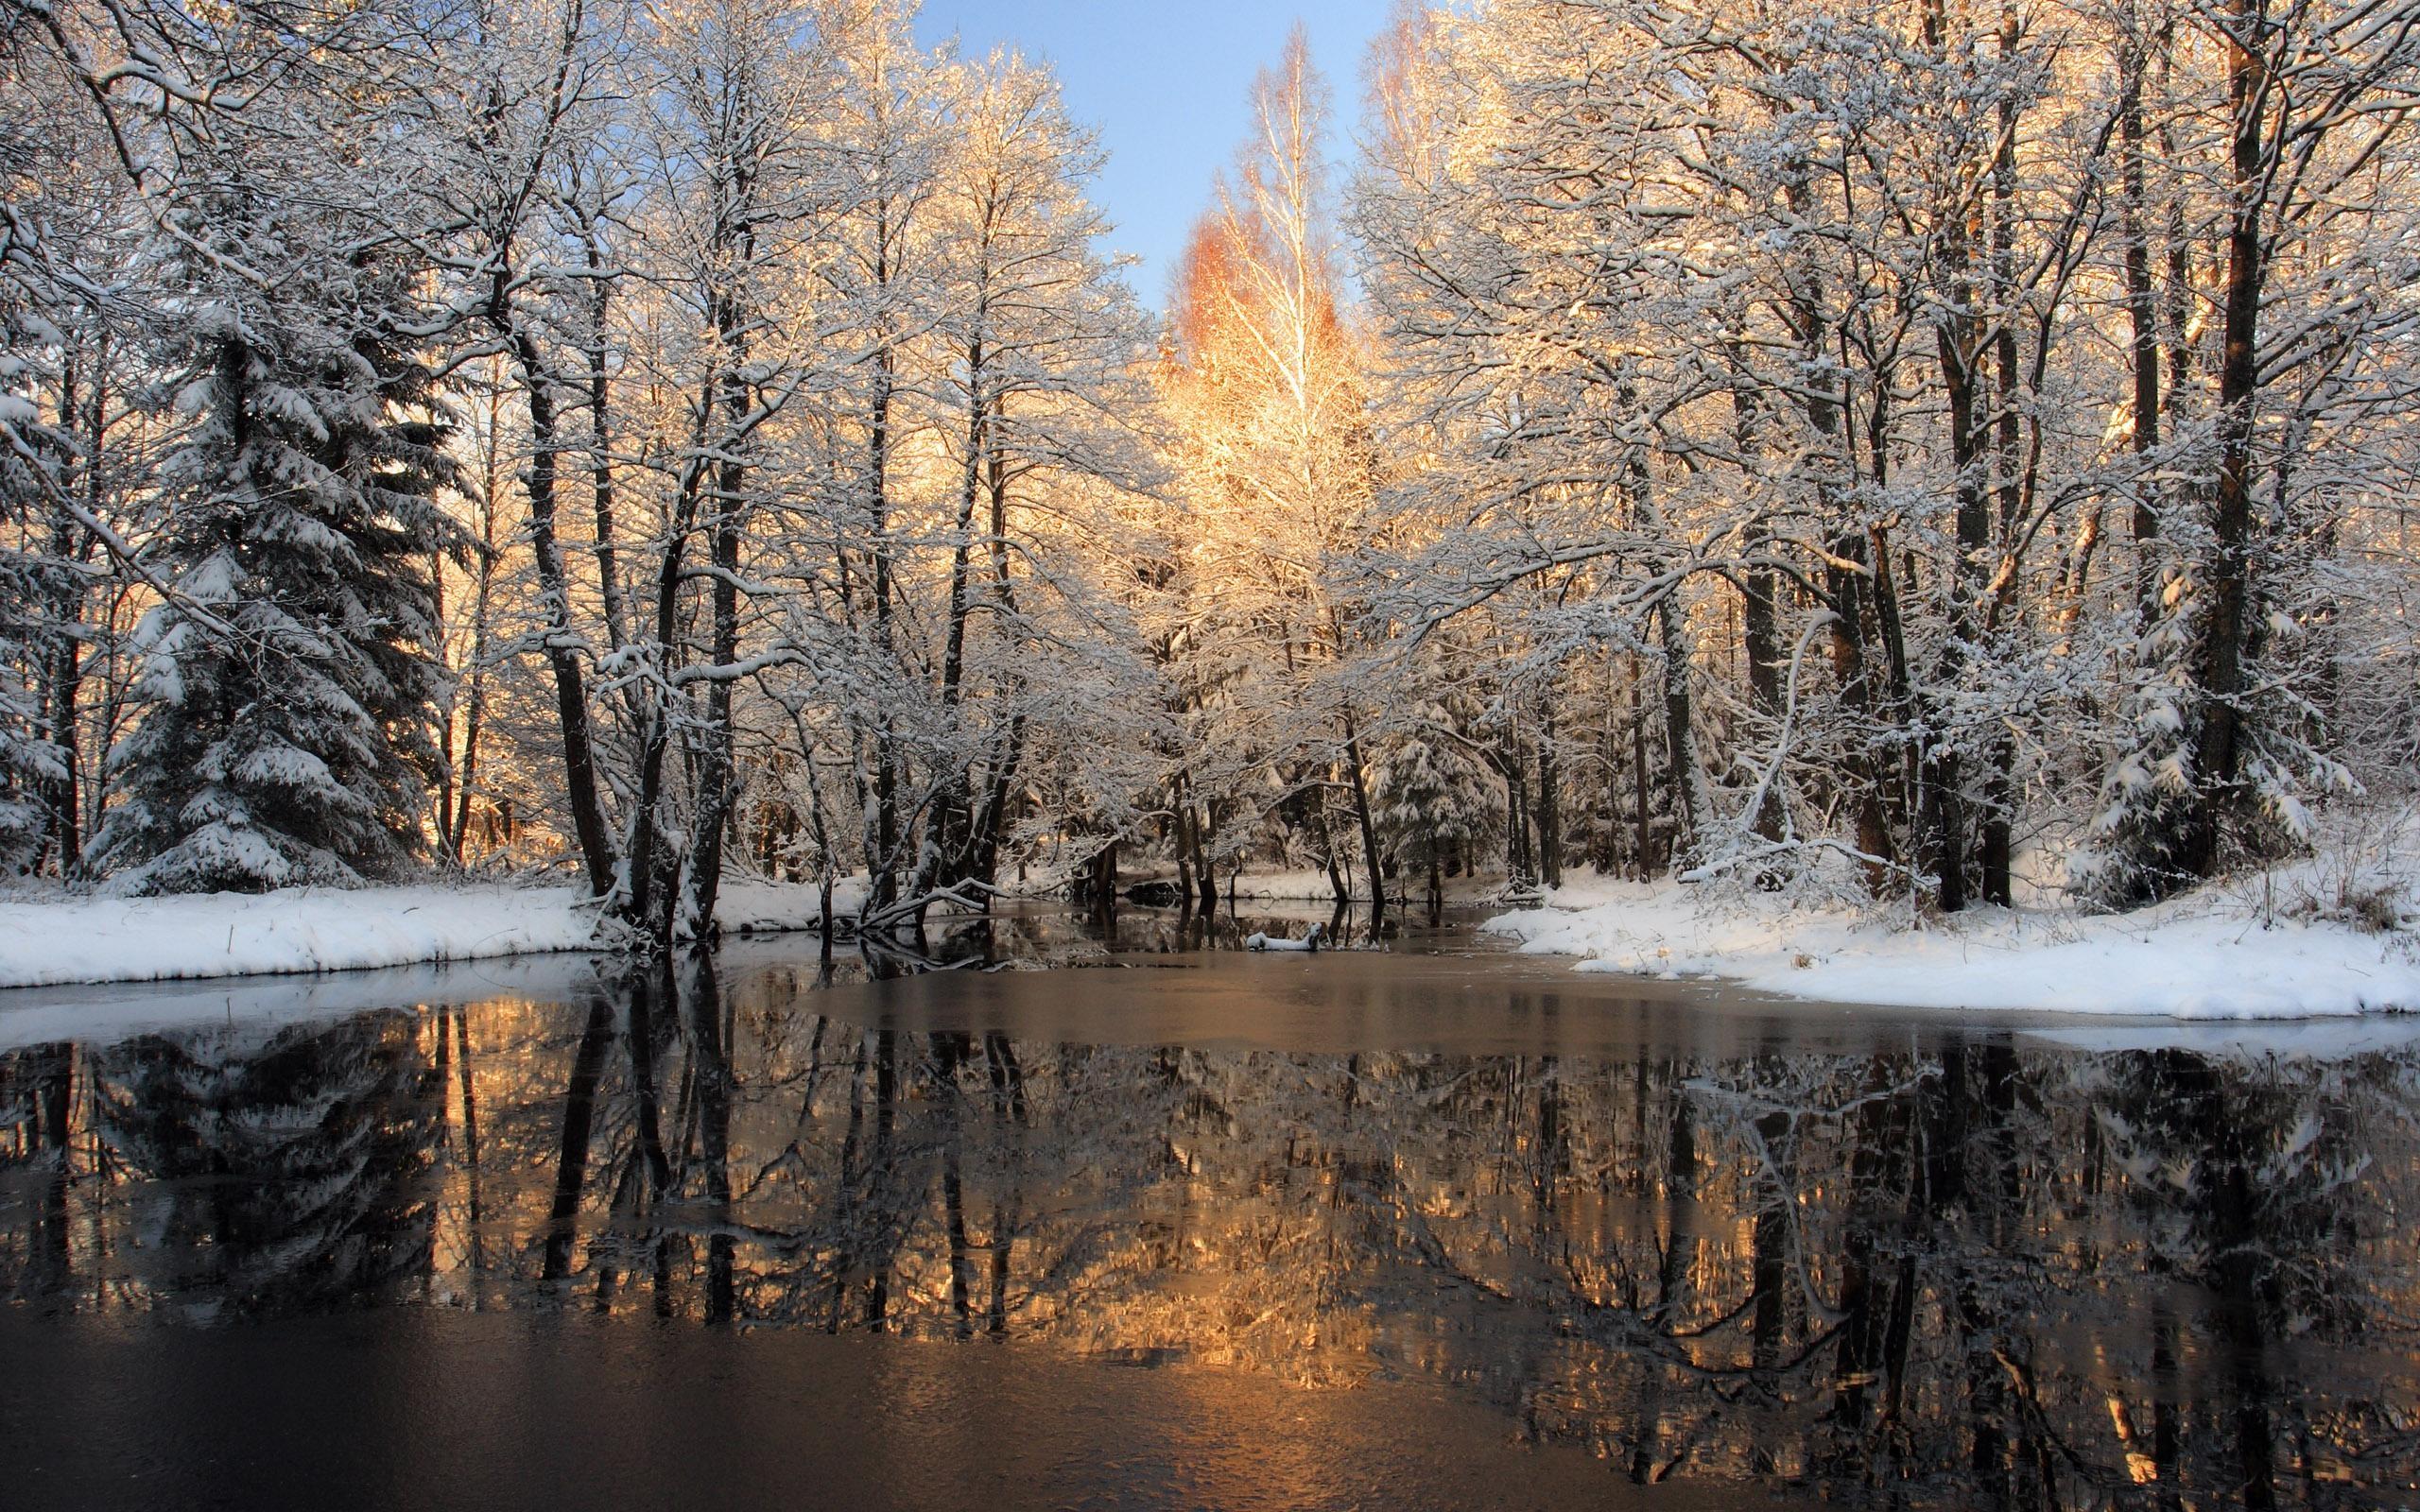 عکس های زیبای طبیعت زمستانی